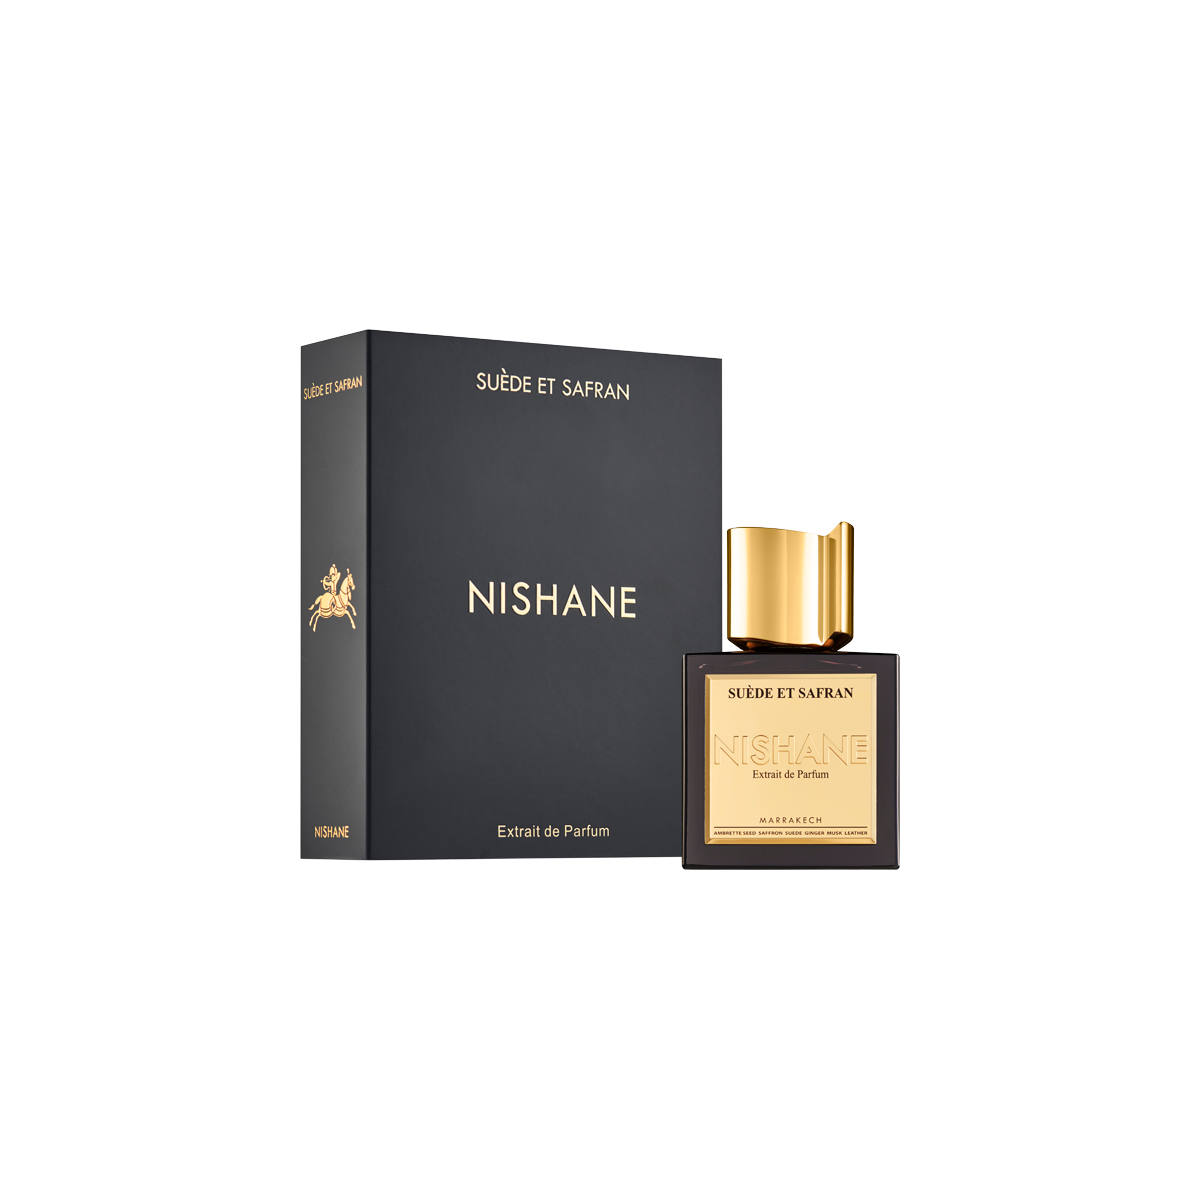 Nishane - Suede Et Safran Extrait de Parfum